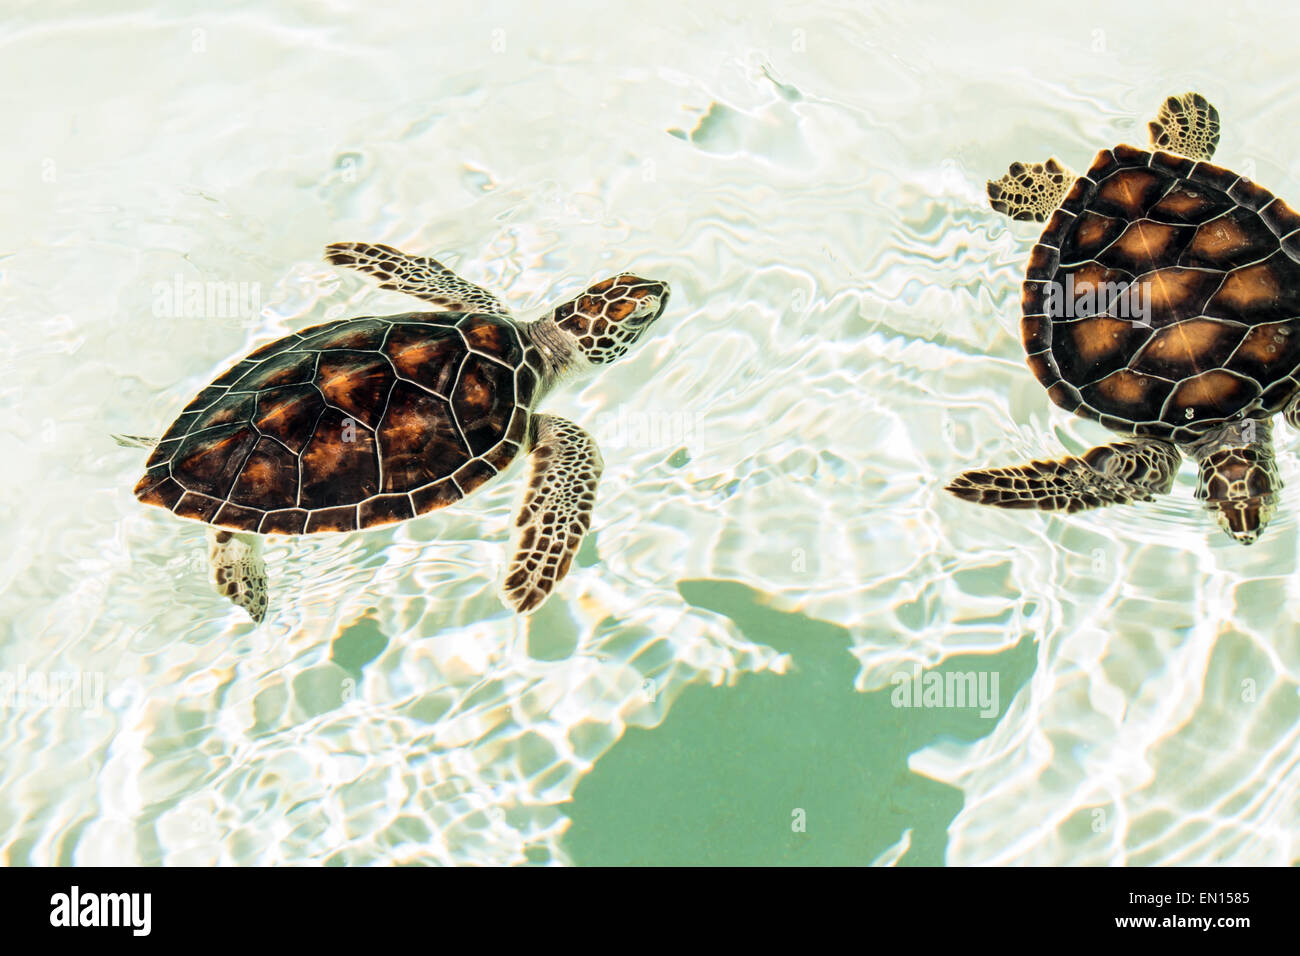 Carino in pericolo le tartarughe Baby nuoto in acque cristalline Foto Stock